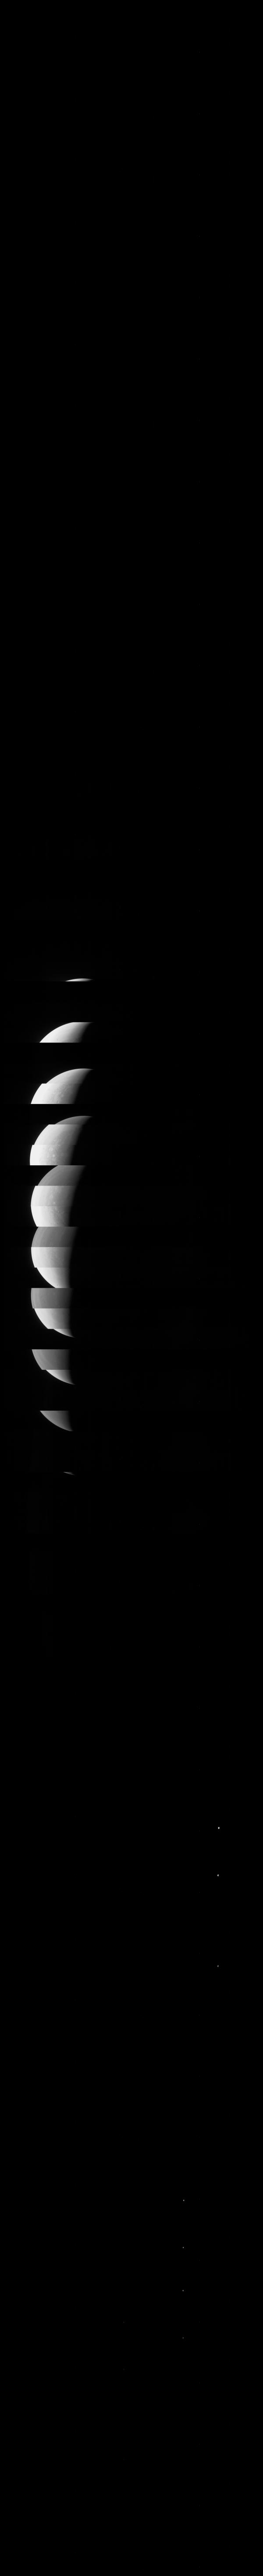 JunoCam: JunoCam là một thiết bị chụp ảnh vô cùng đặc biệt được gắn trên phi thuyền Juno đi khám phá sao Mộc. Với những bức ảnh chụp từ JunoCam, chúng ta có thể ngắm nhìn vẻ đẹp của sao Mộc từ góc nhìn mới lạ và chưa từng được khám phá trước đây. Hãy xem các hình ảnh chụp từ JunoCam để khám phá và trải nghiệm một thế giới hoàn toàn mới!